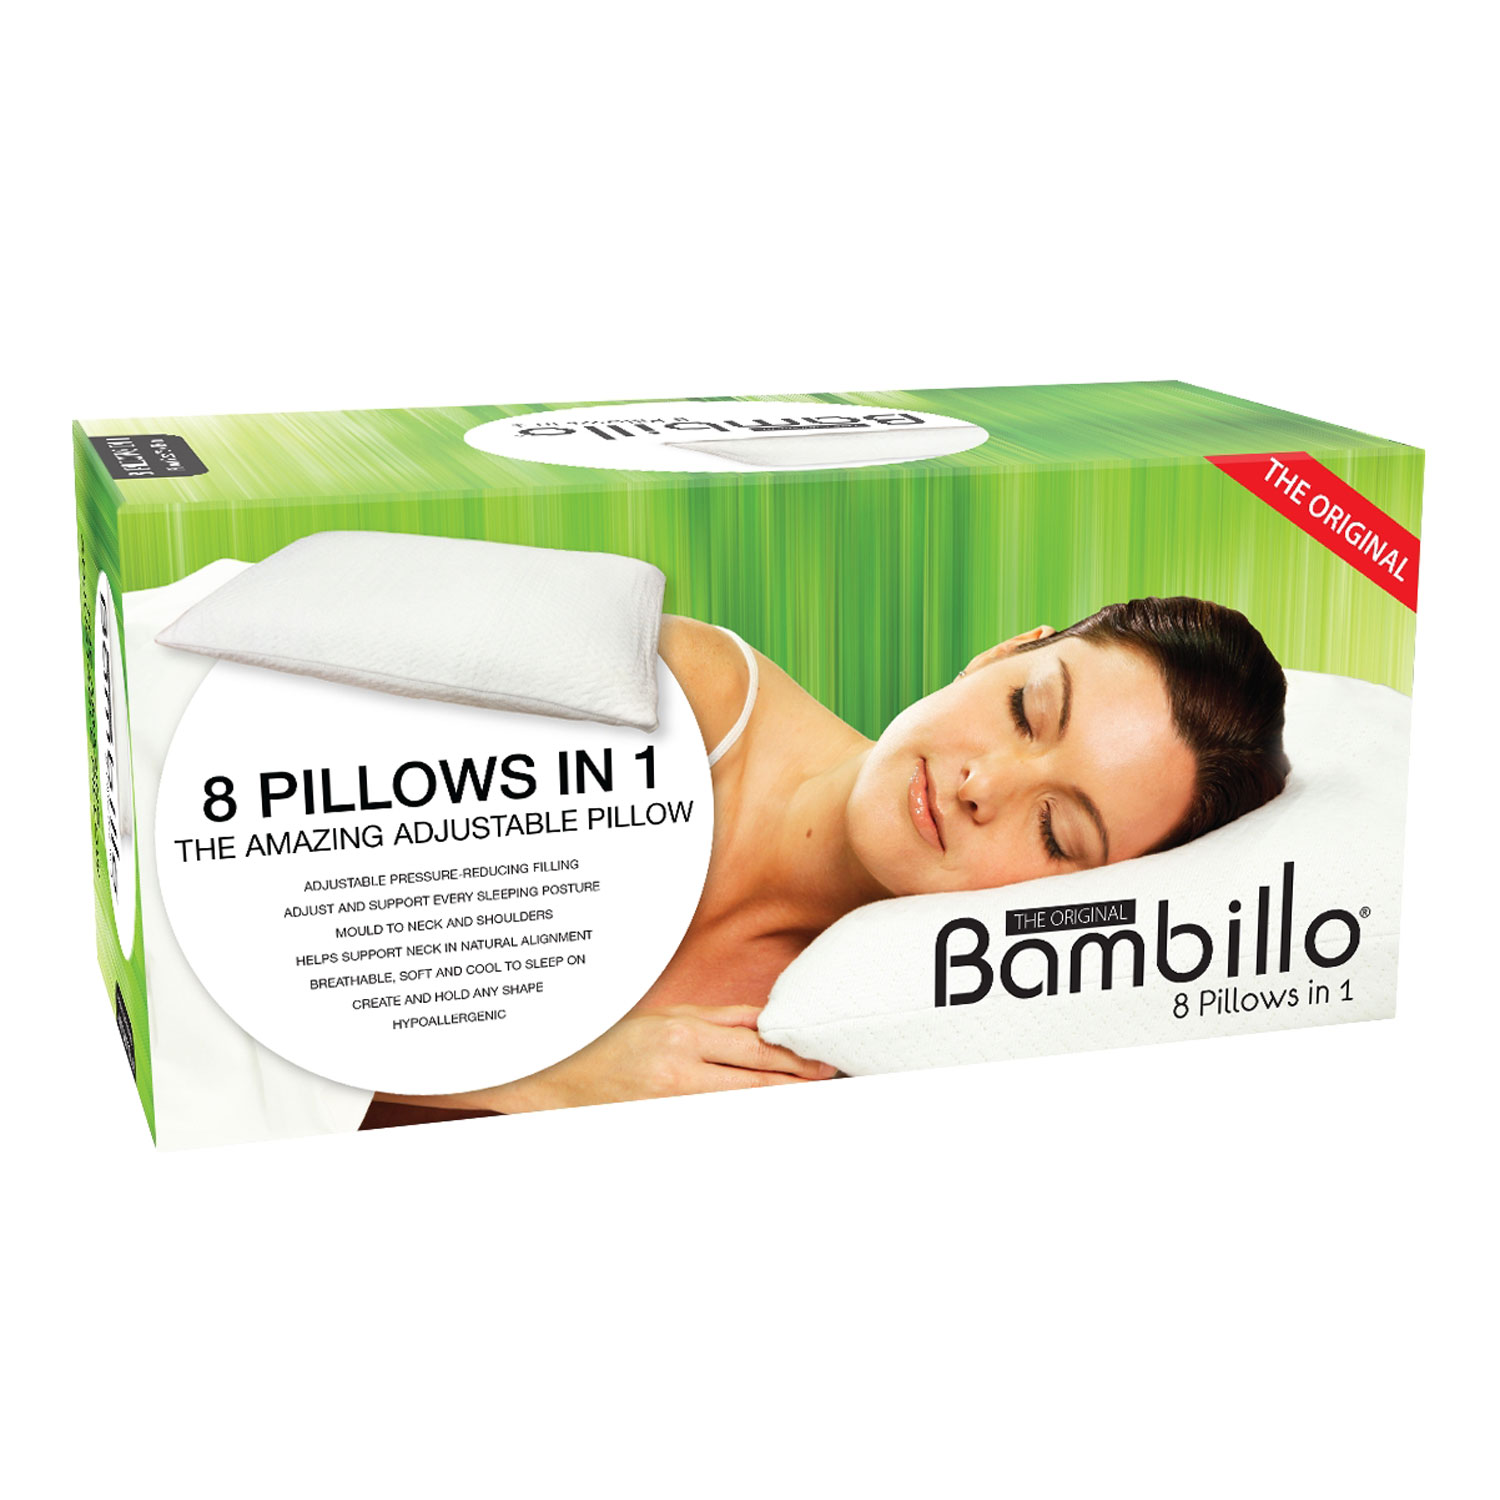 Bambillo Pillow - As Seen on TV